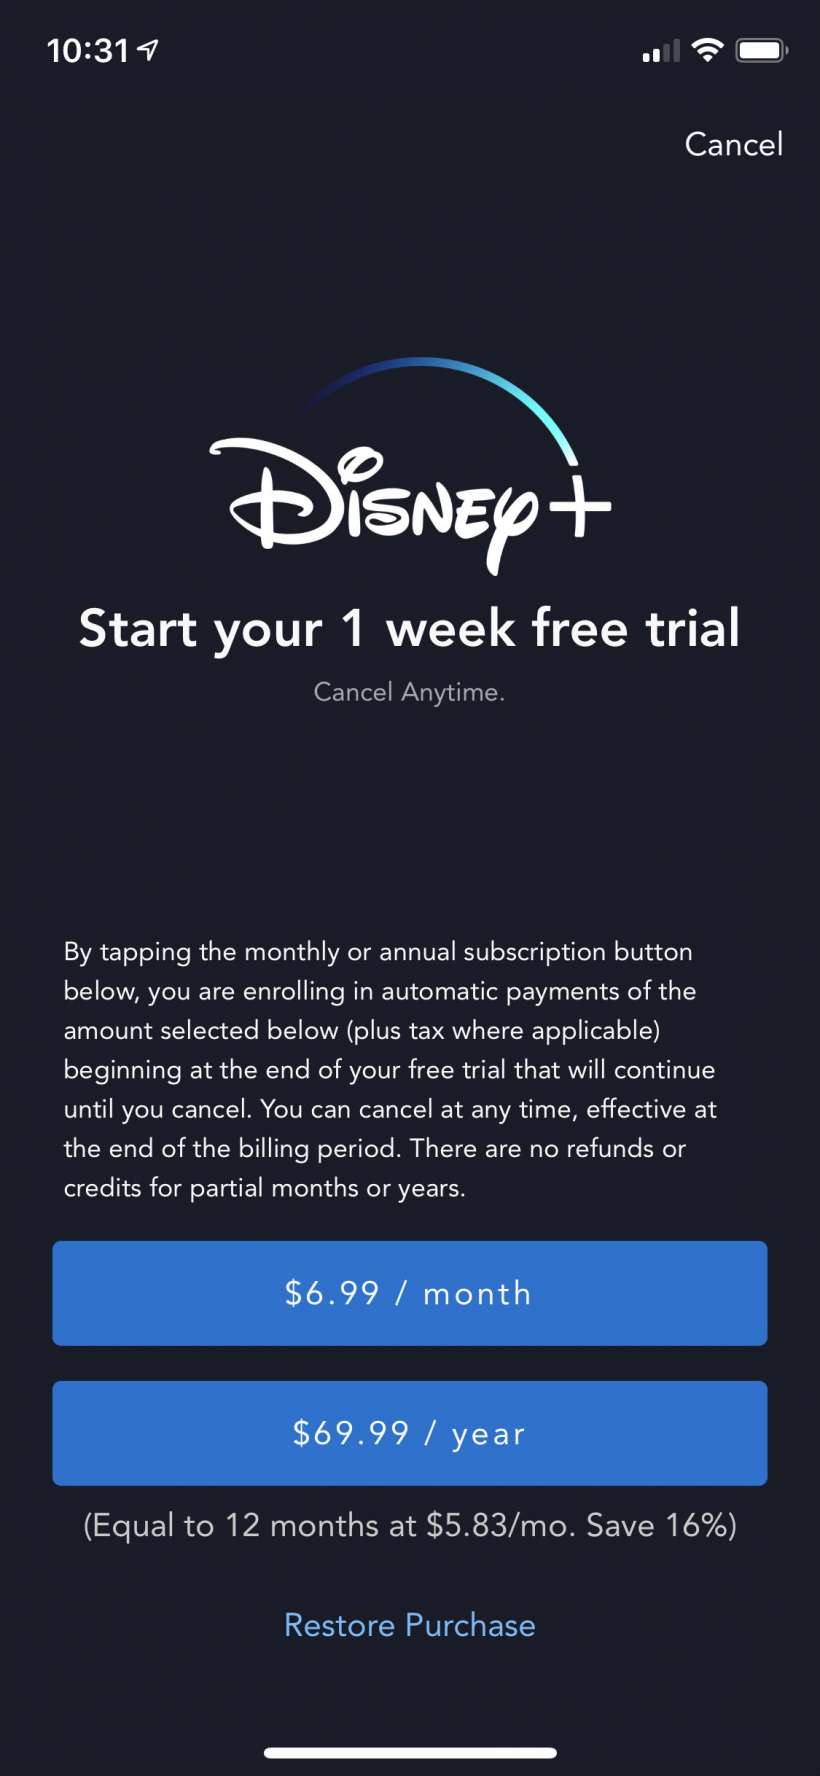 Cómo iniciar el periodo de prueba gratuita de una semana de Disney + iPhone y iPad.